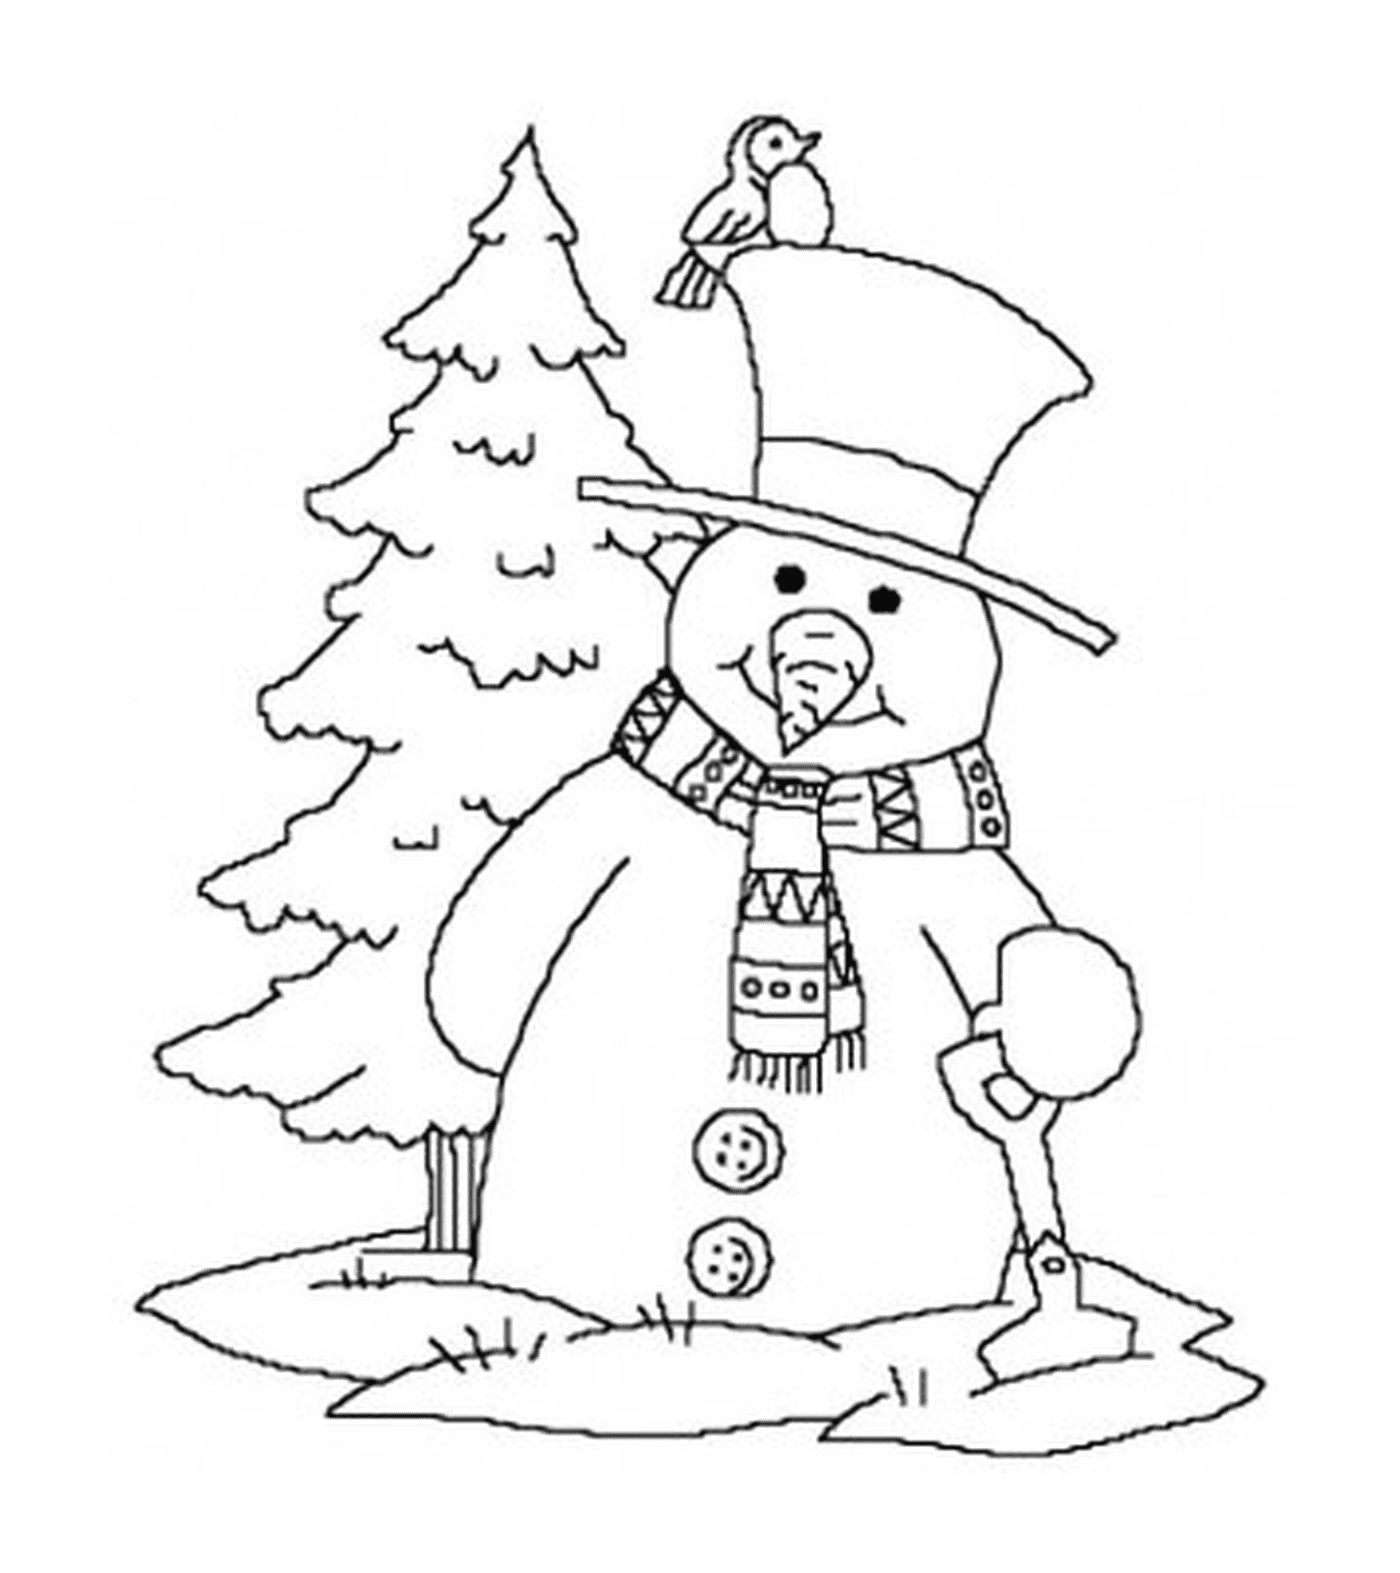  Снежный человек рядом с деревом 